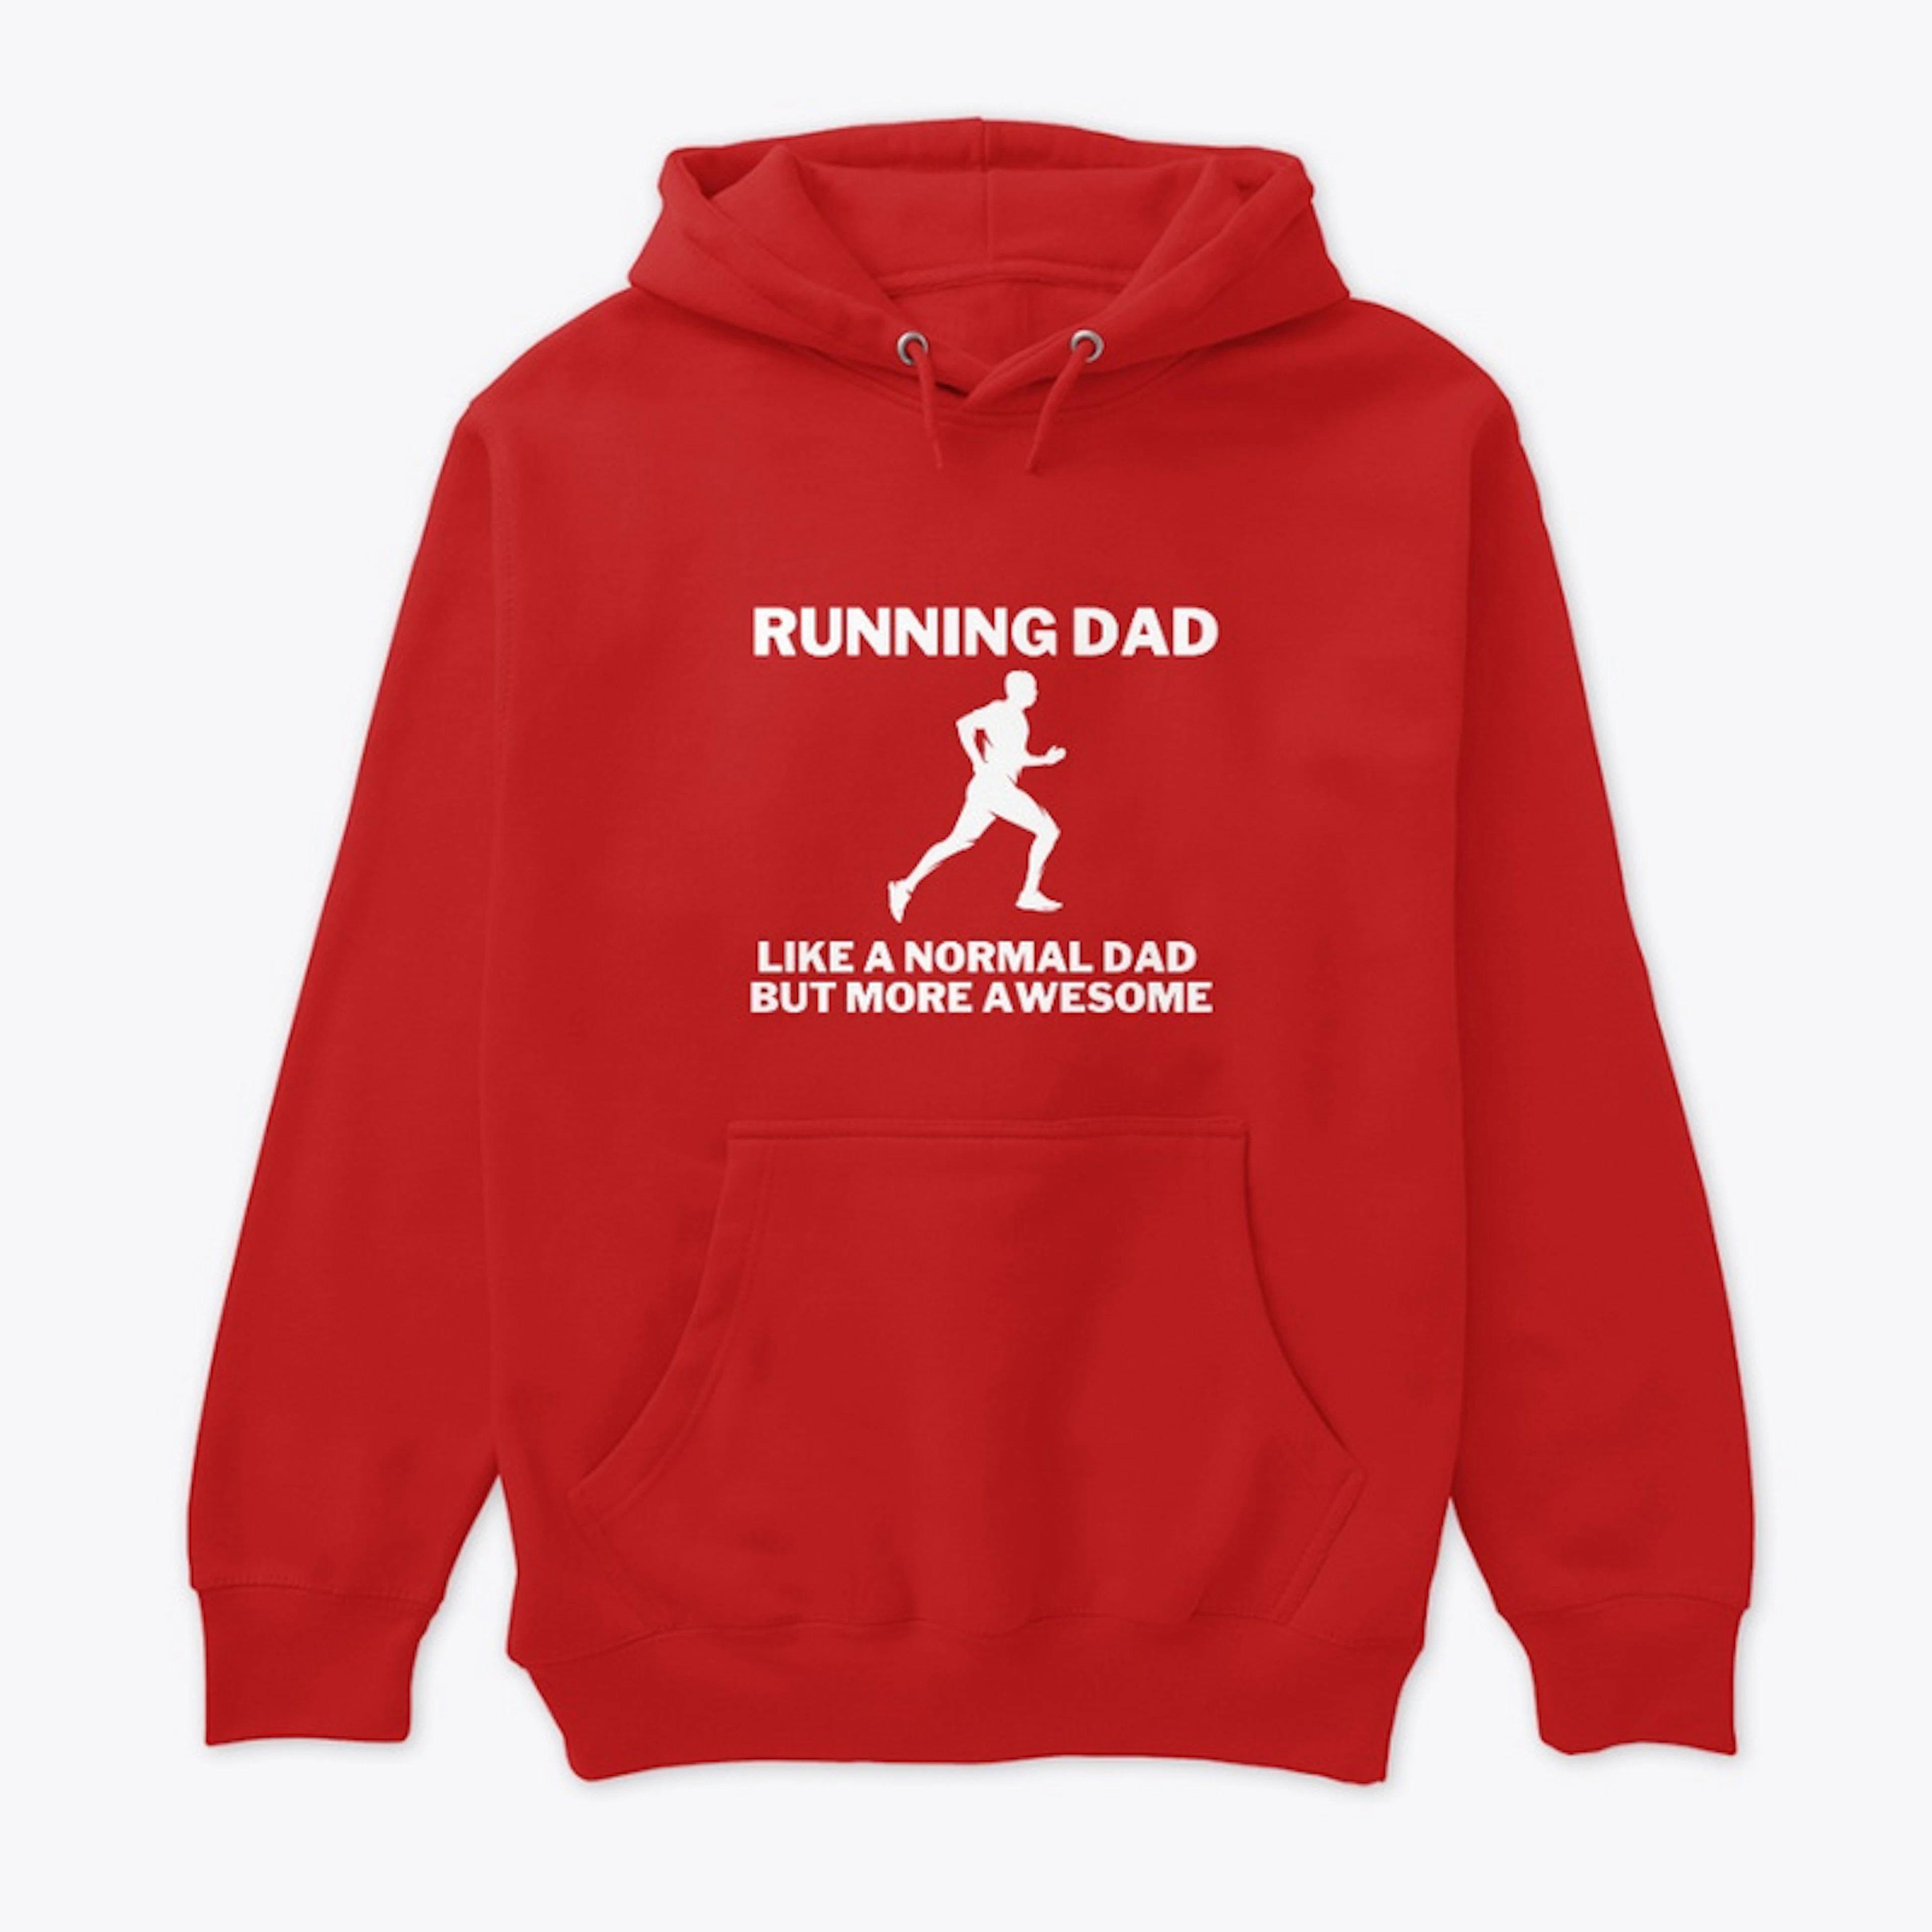 Runner Dad